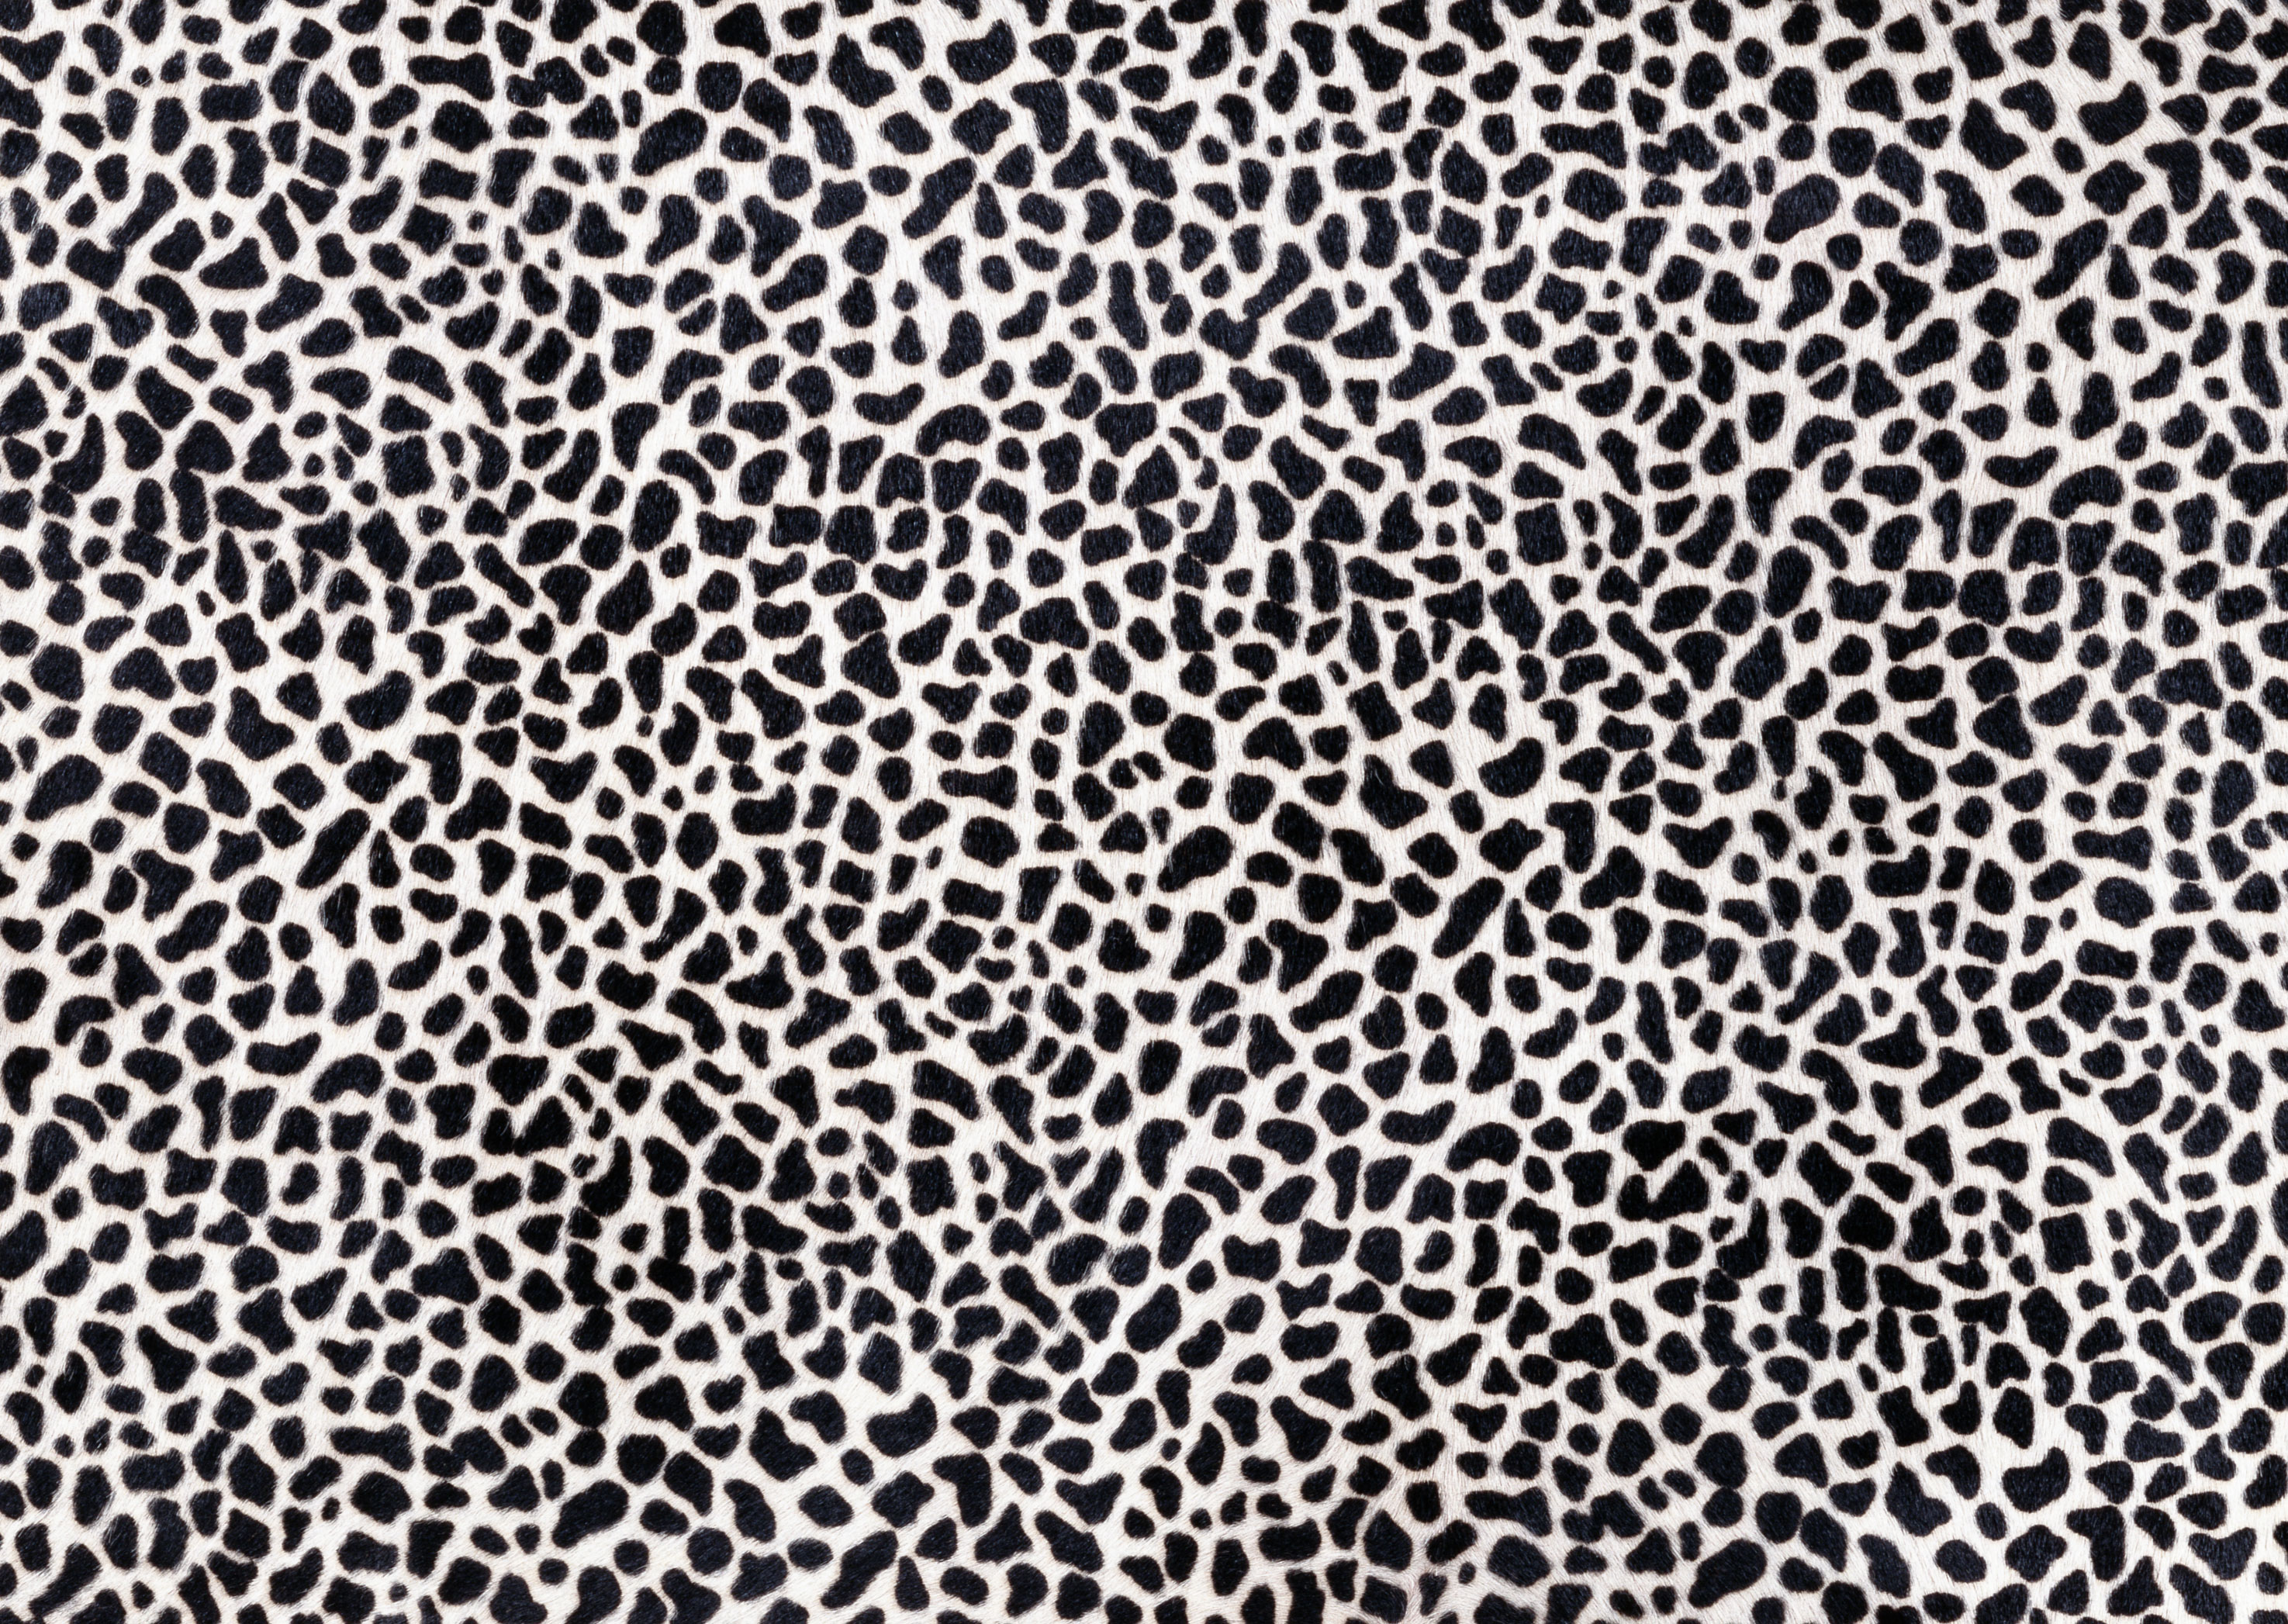 animal leopard skin texture, background